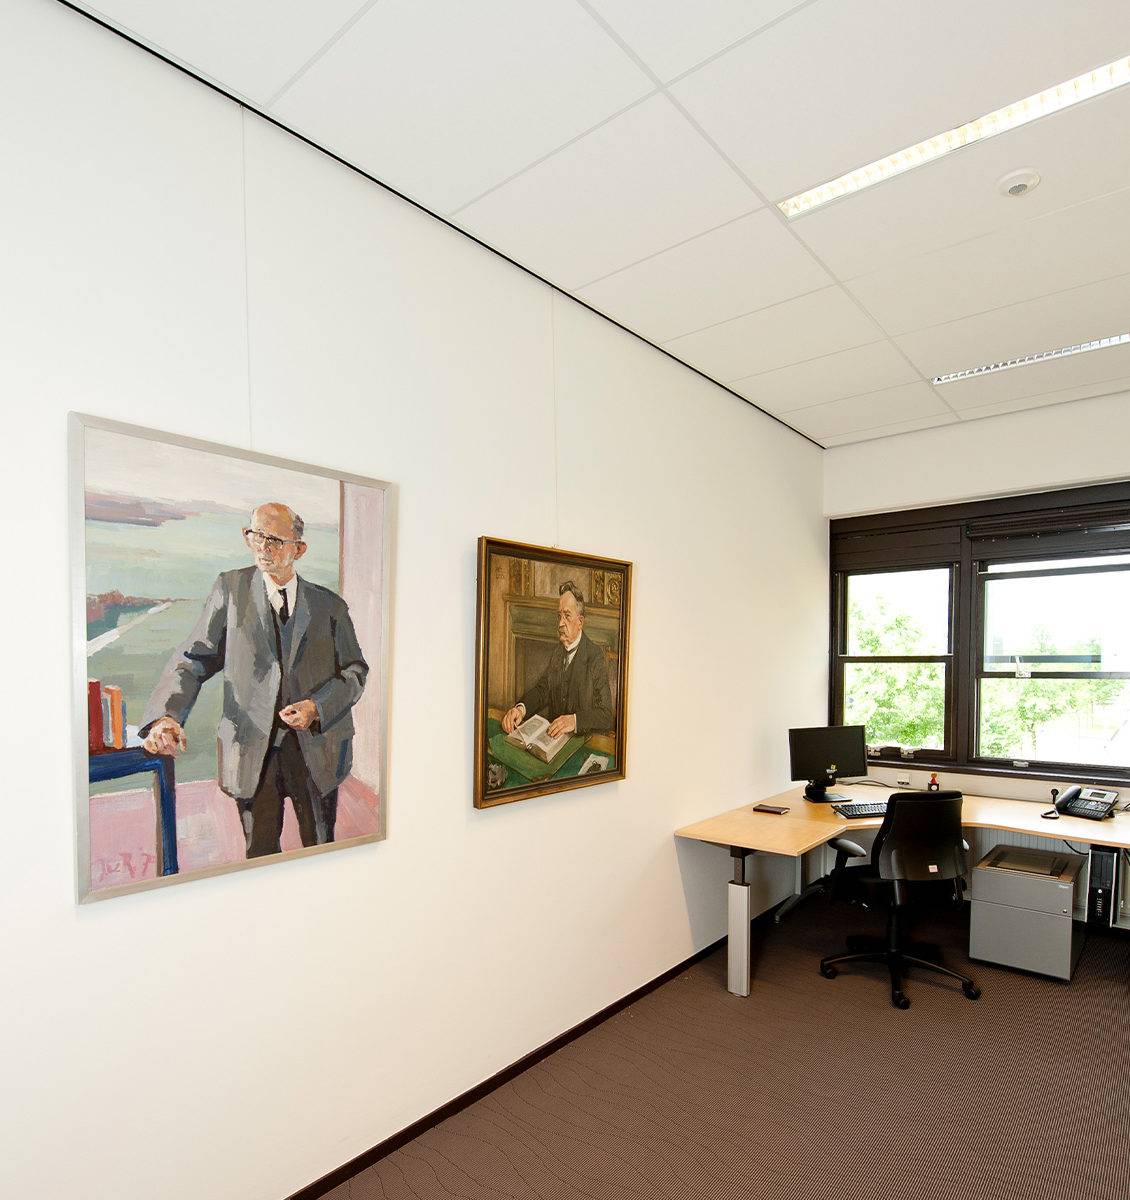 NL kantoorruimte in kantoorgebouw twee grote schilderijen van mannen